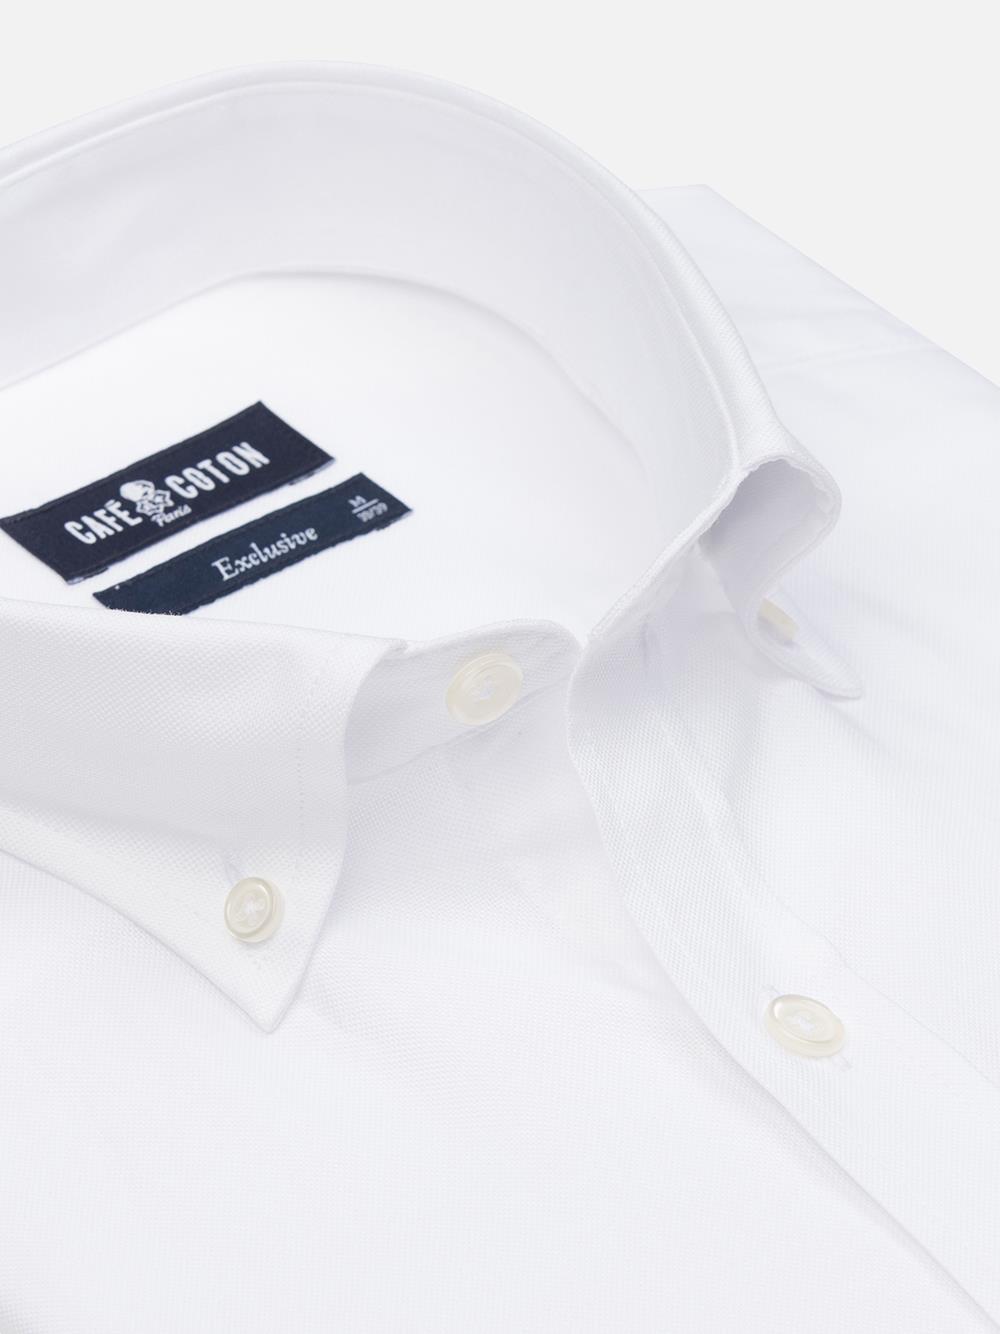 Camicia slim fit oxford bianca - Colletto abbottonato